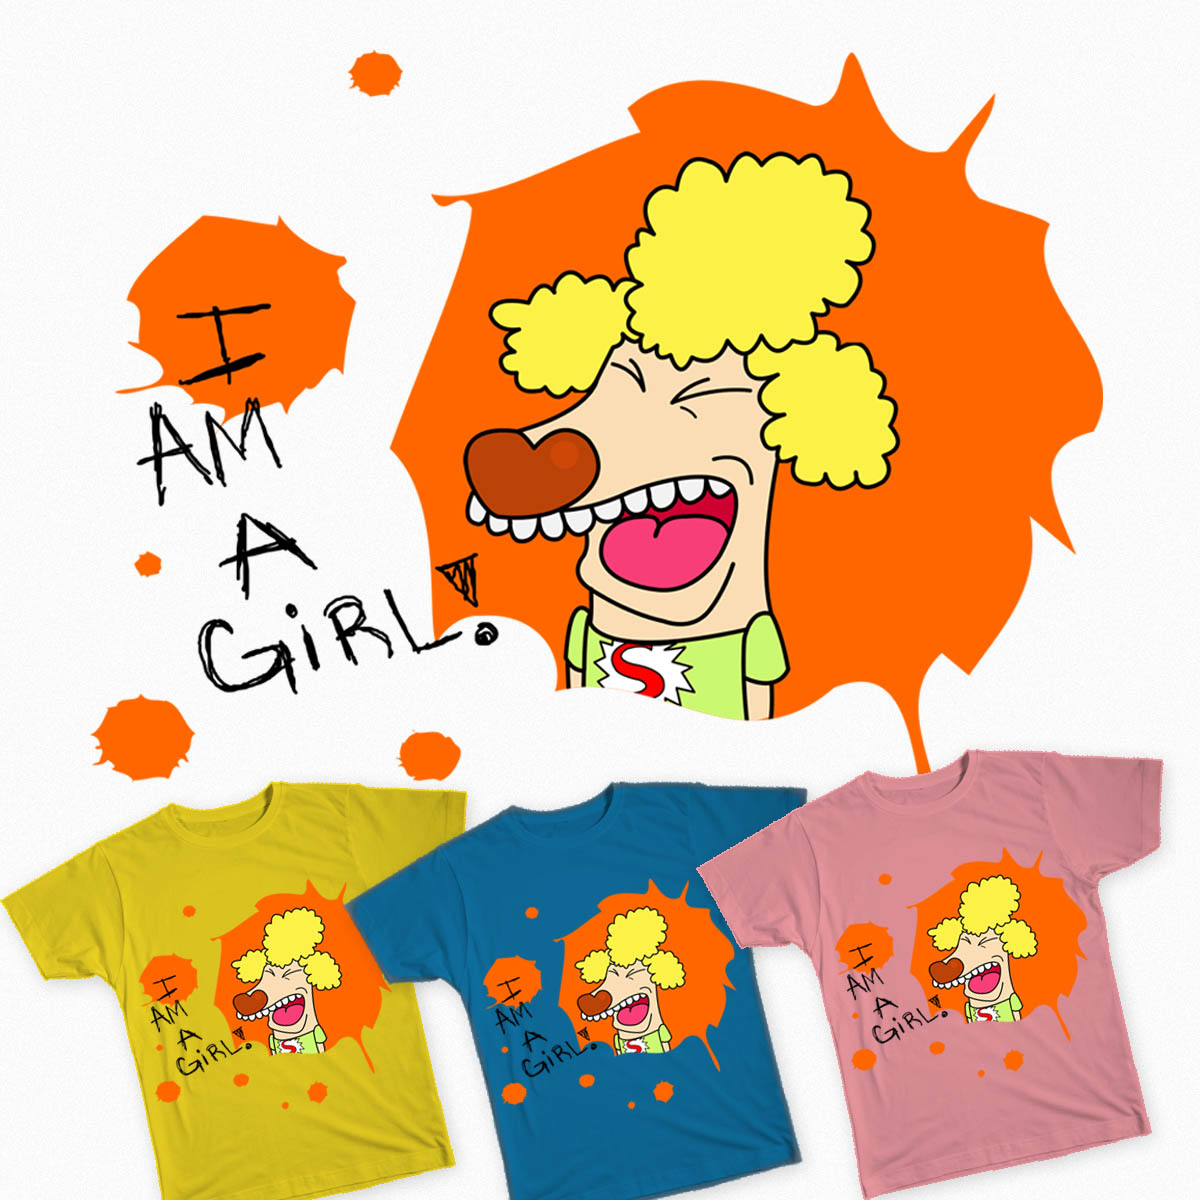 I am a Girl!